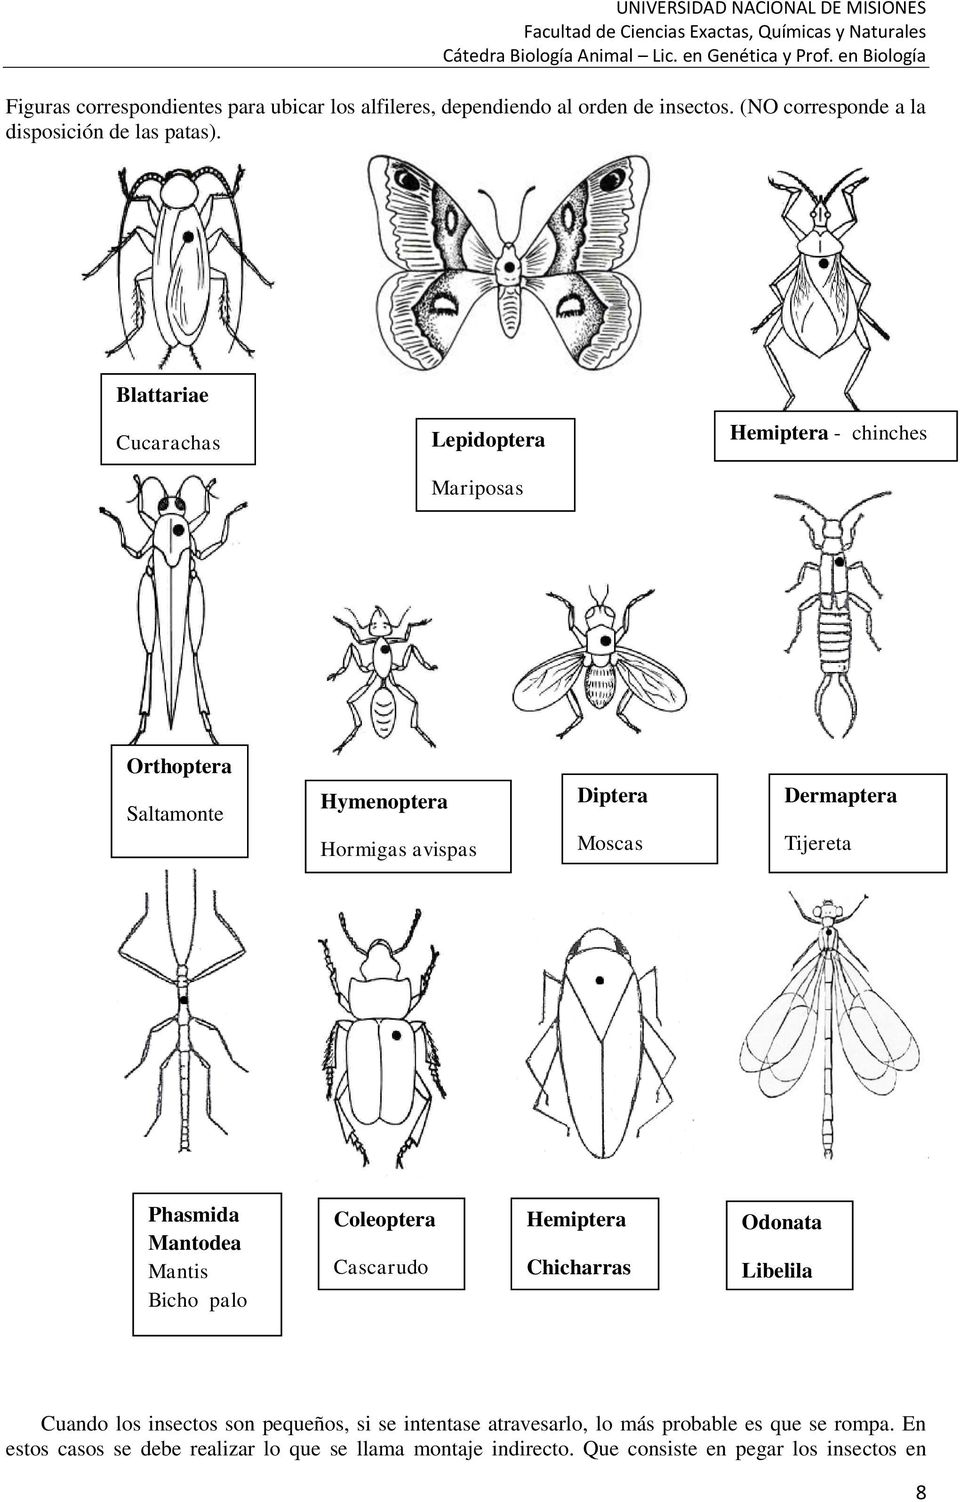 Tijereta Phasmida Mantodea Mantis Bicho palo Coleoptera Cascarudo Hemiptera Chicharras Odonata Libelila Cuando los insectos son pequeños, si se